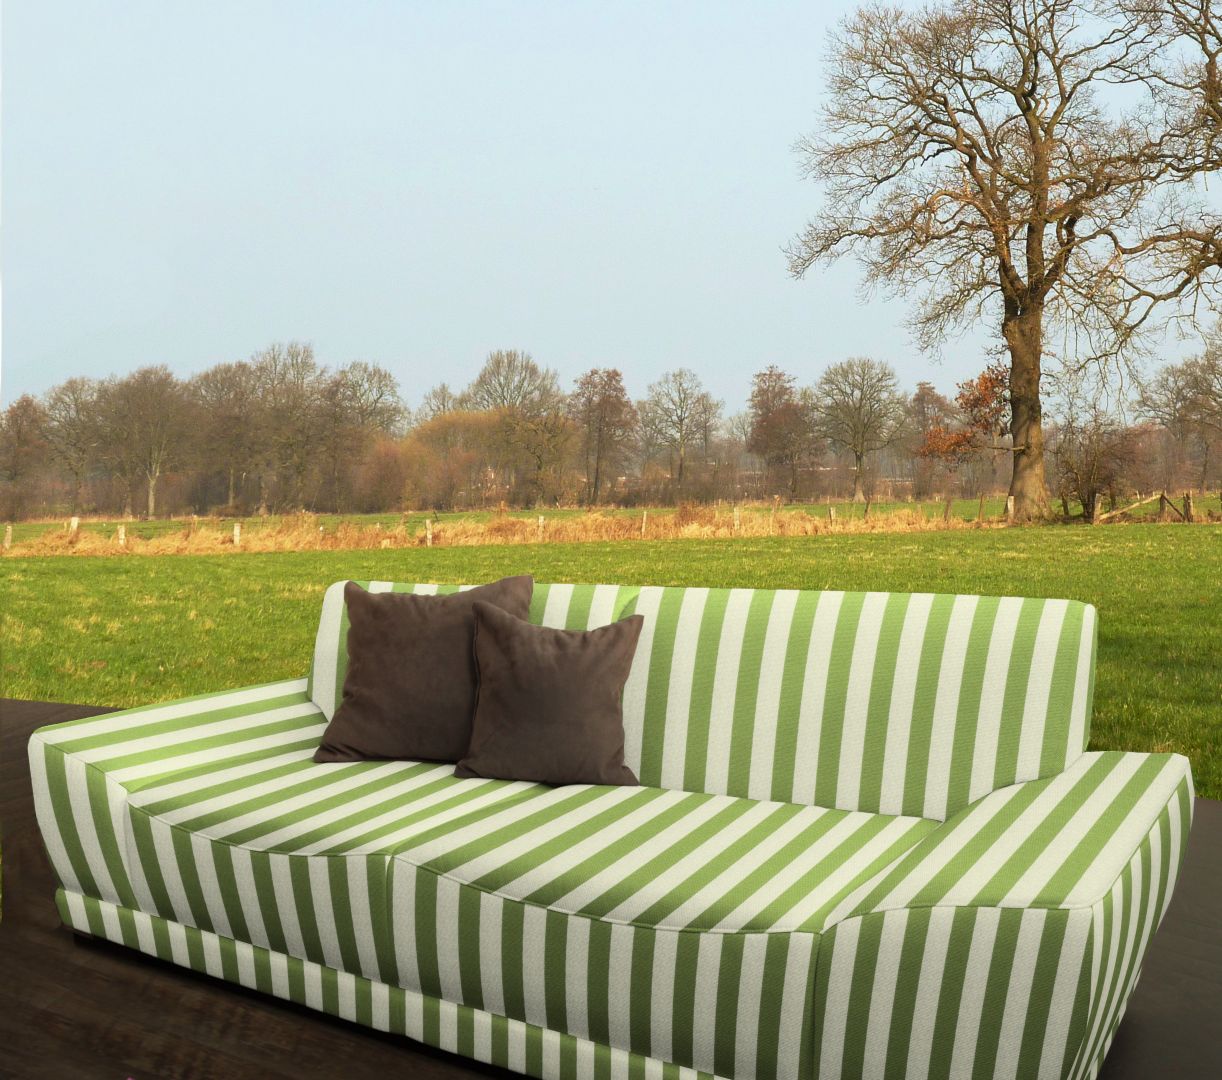 FabFab sofa obita materiałem odpornym na wszelkie warunki pogodowe, pozwala cieszyć się prawdziwą tapicerowaną sofą w ogrodzie.
Fot. Archiwum